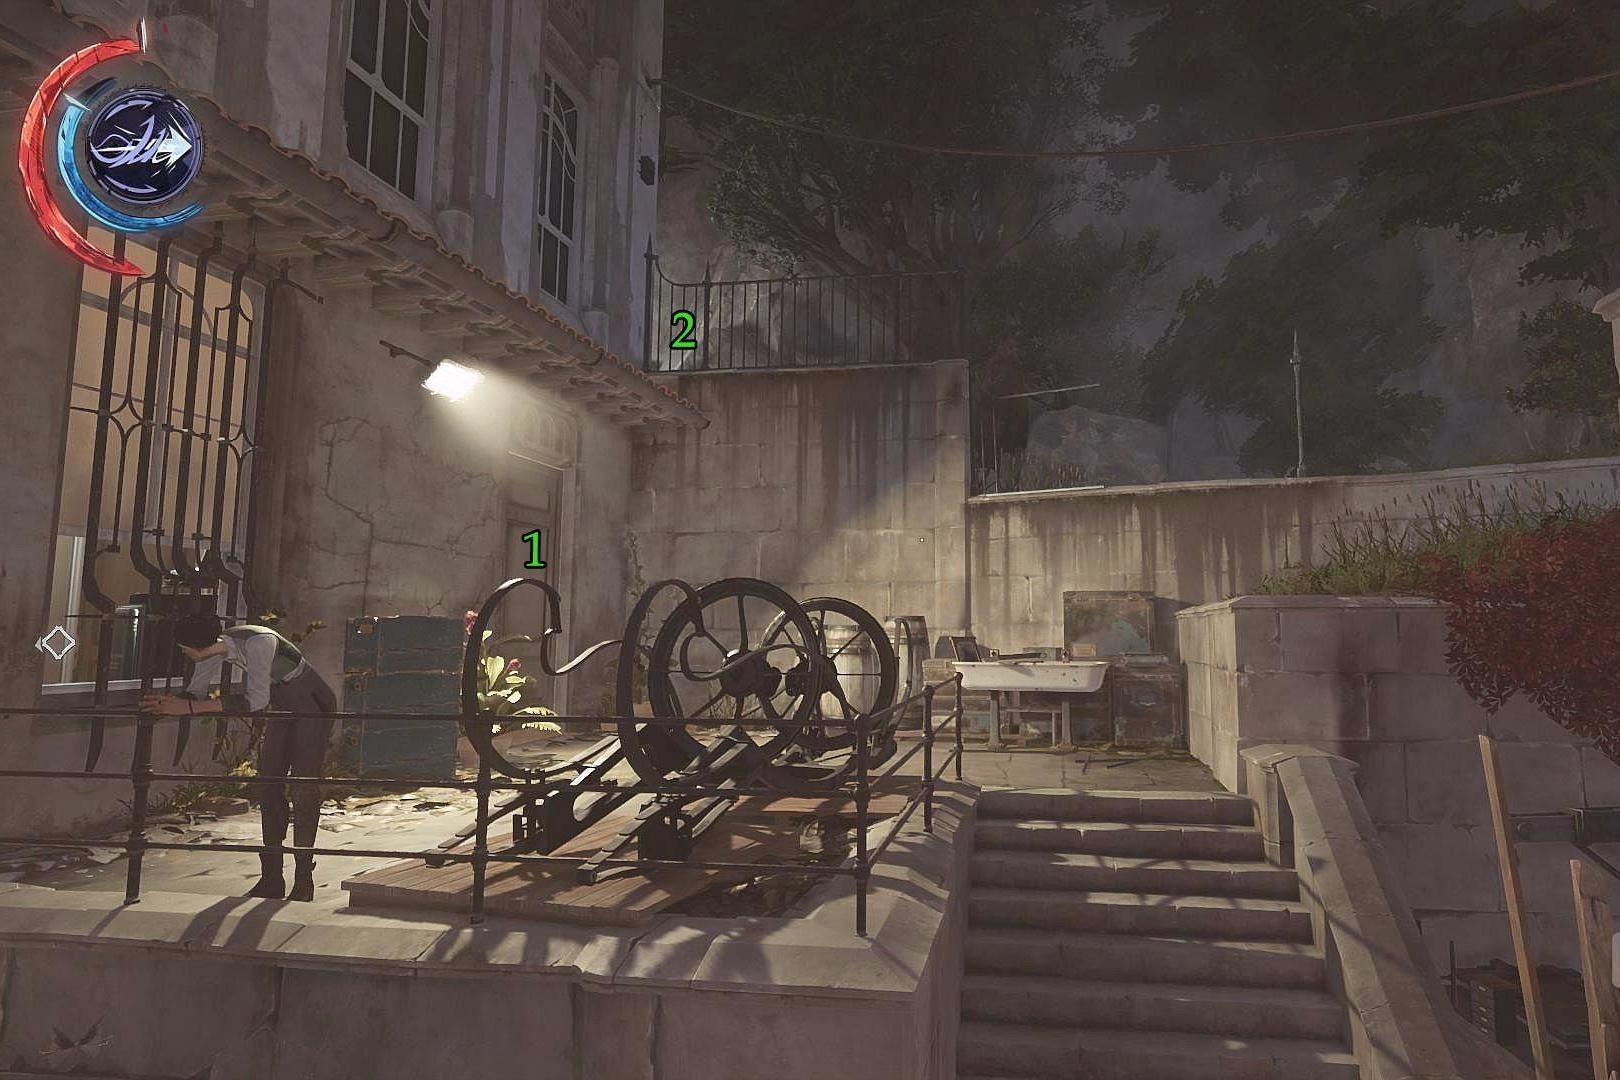 Obrazki dla Dishonored 2 - Misja 8: Wielki Pałac - sejfy Winslowa, czarnorynkowy sklep, ściana światła